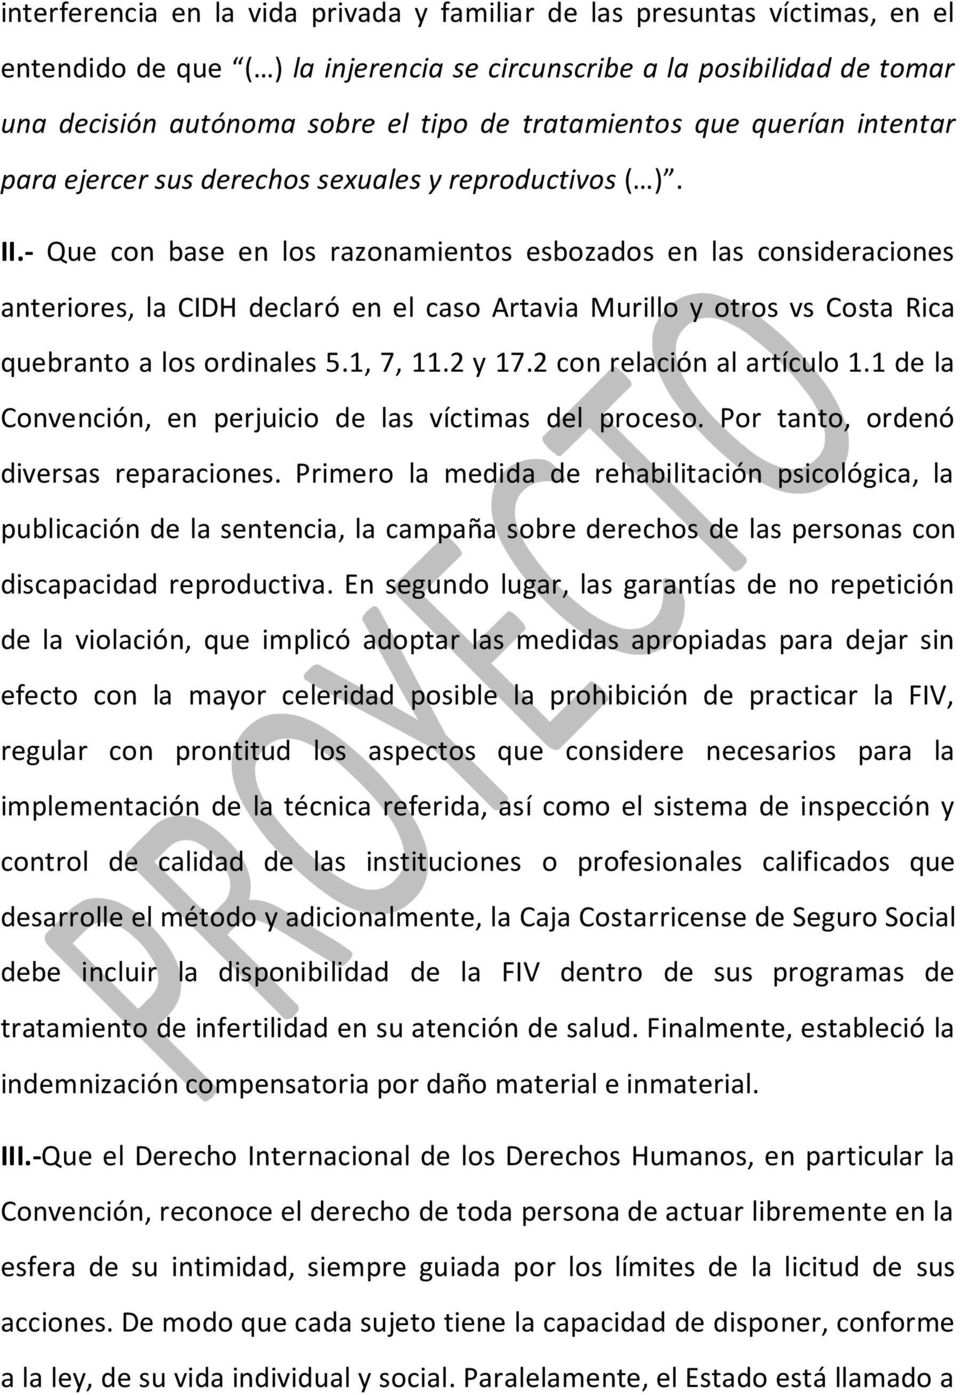 - Que con base en los razonamientos esbozados en las consideraciones anteriores, la CIDH declaró en el caso Artavia Murillo y otros vs Costa Rica quebranto a los ordinales 5.1, 7, 11.2 y 17.